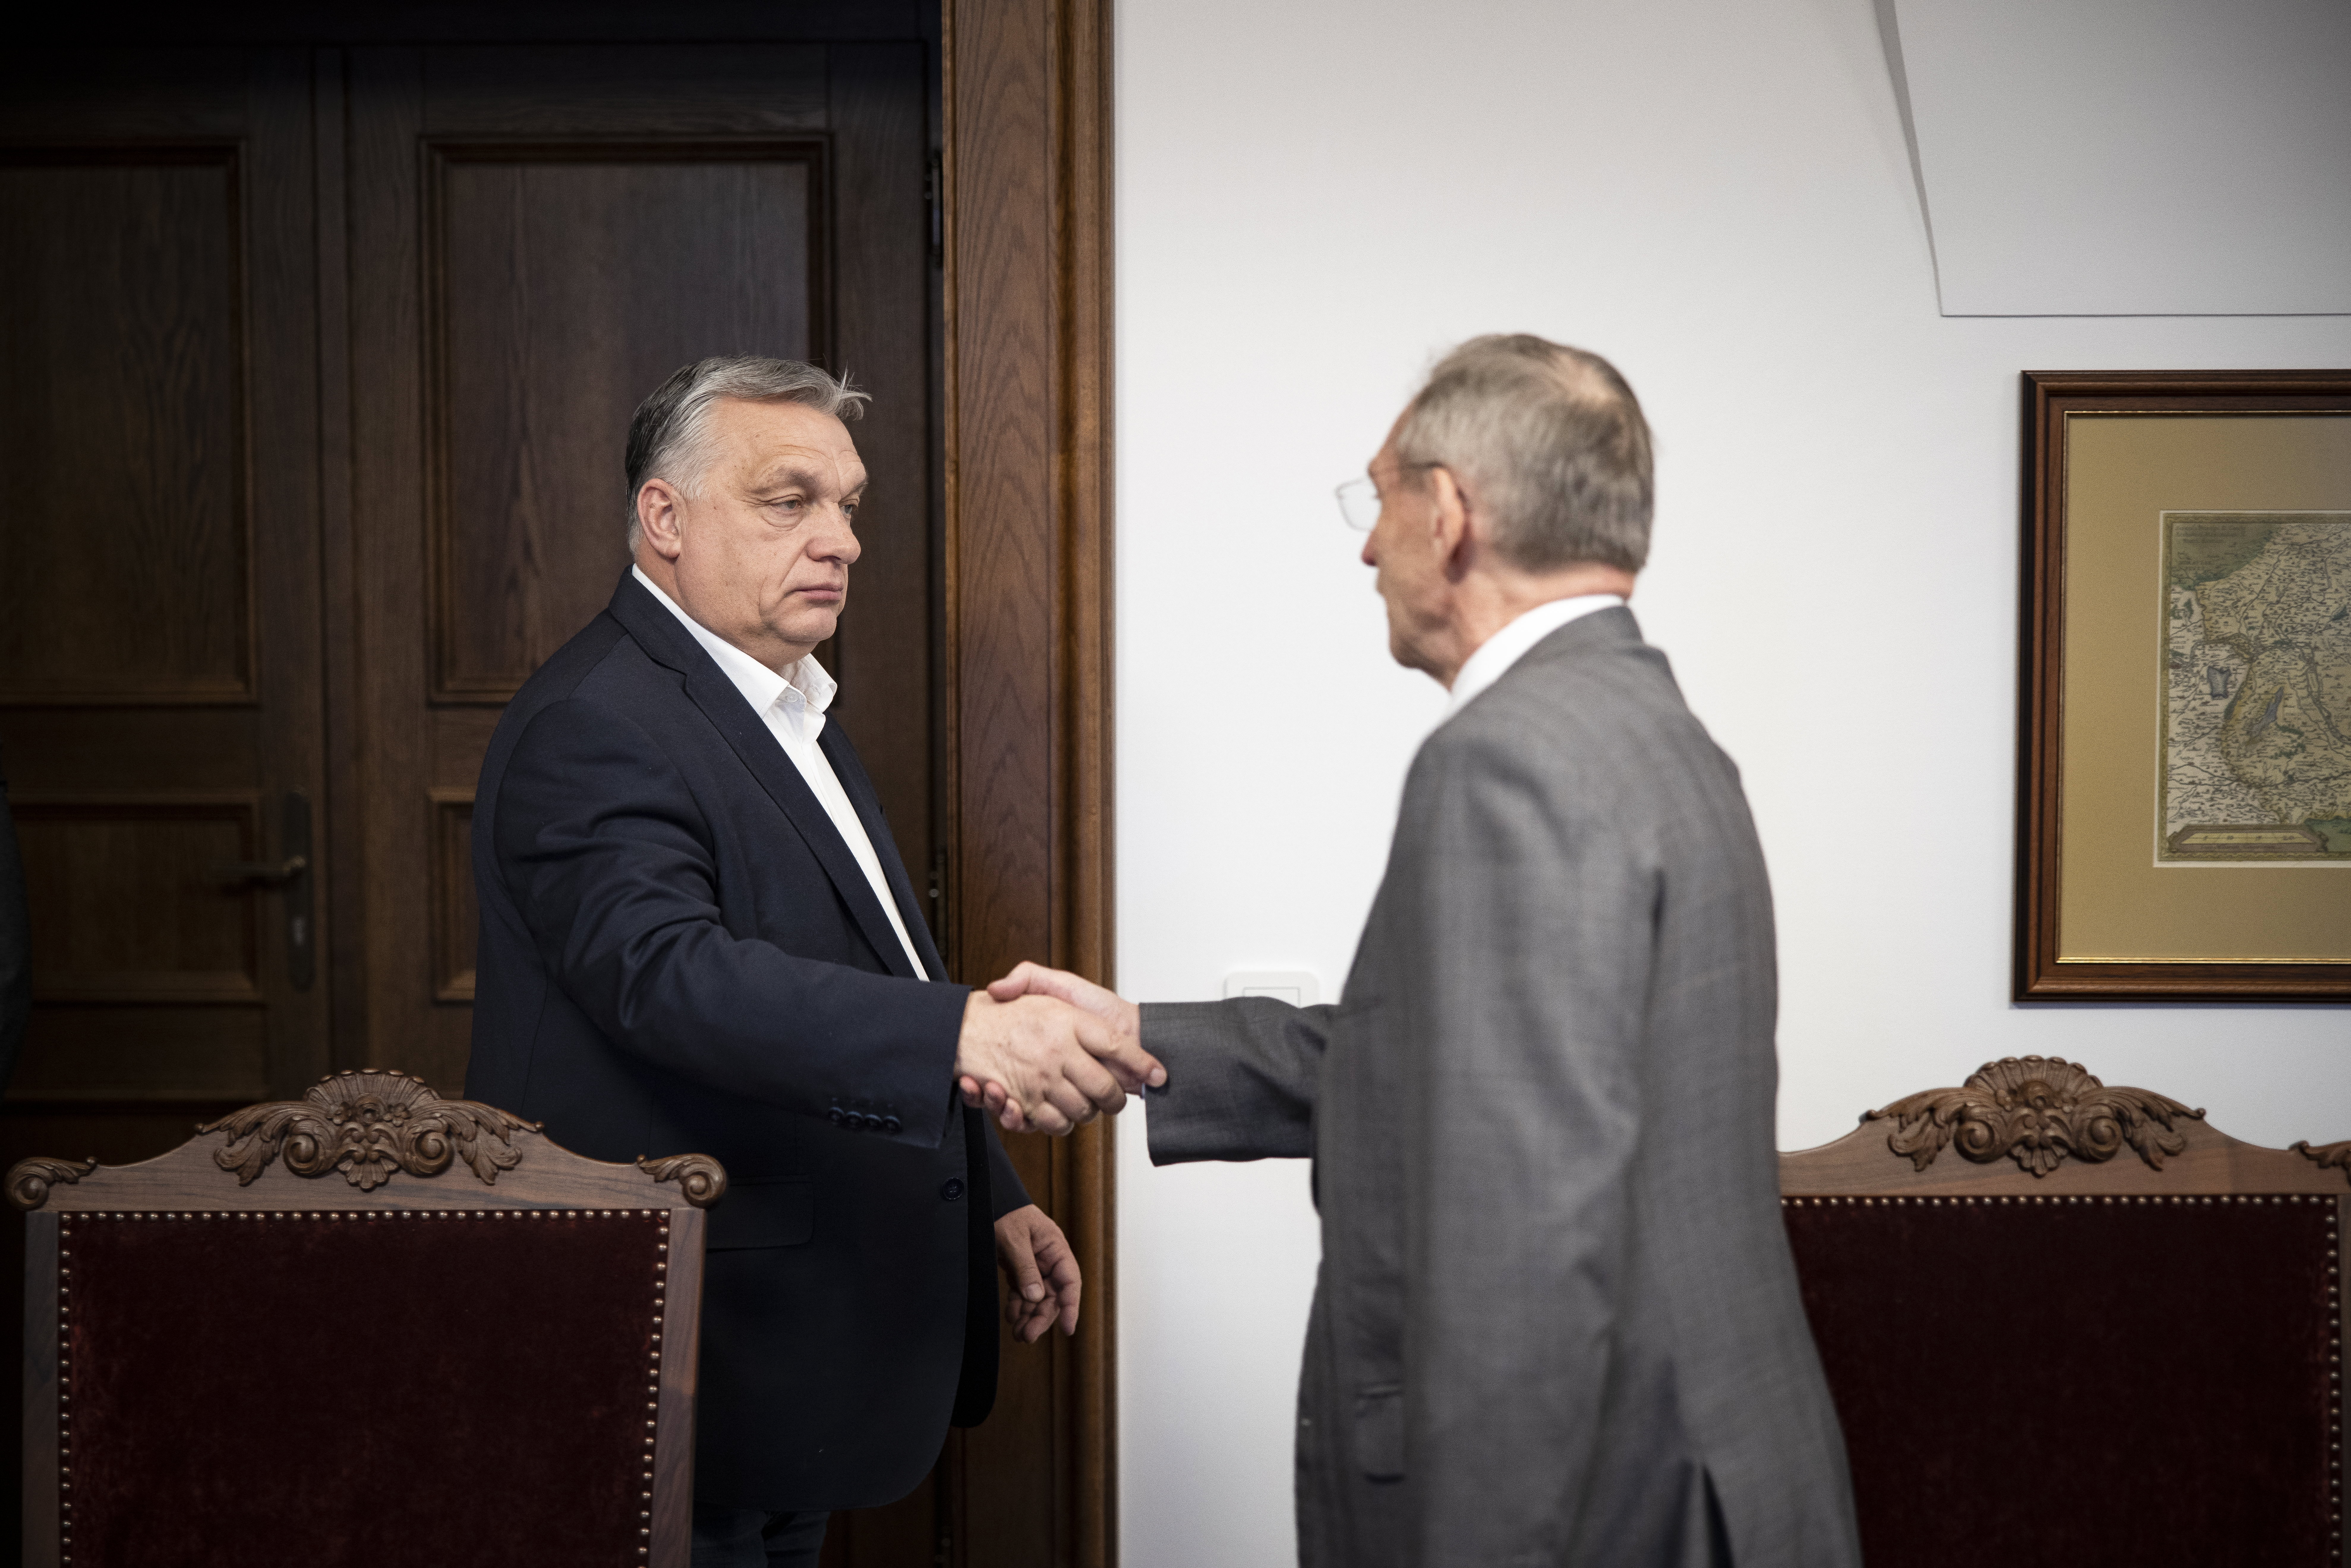 Hazaért Orbán és azonnal kormánykabinet-ülést hívott össze: Pintér, Rogán és Gulyás is jelen voltak